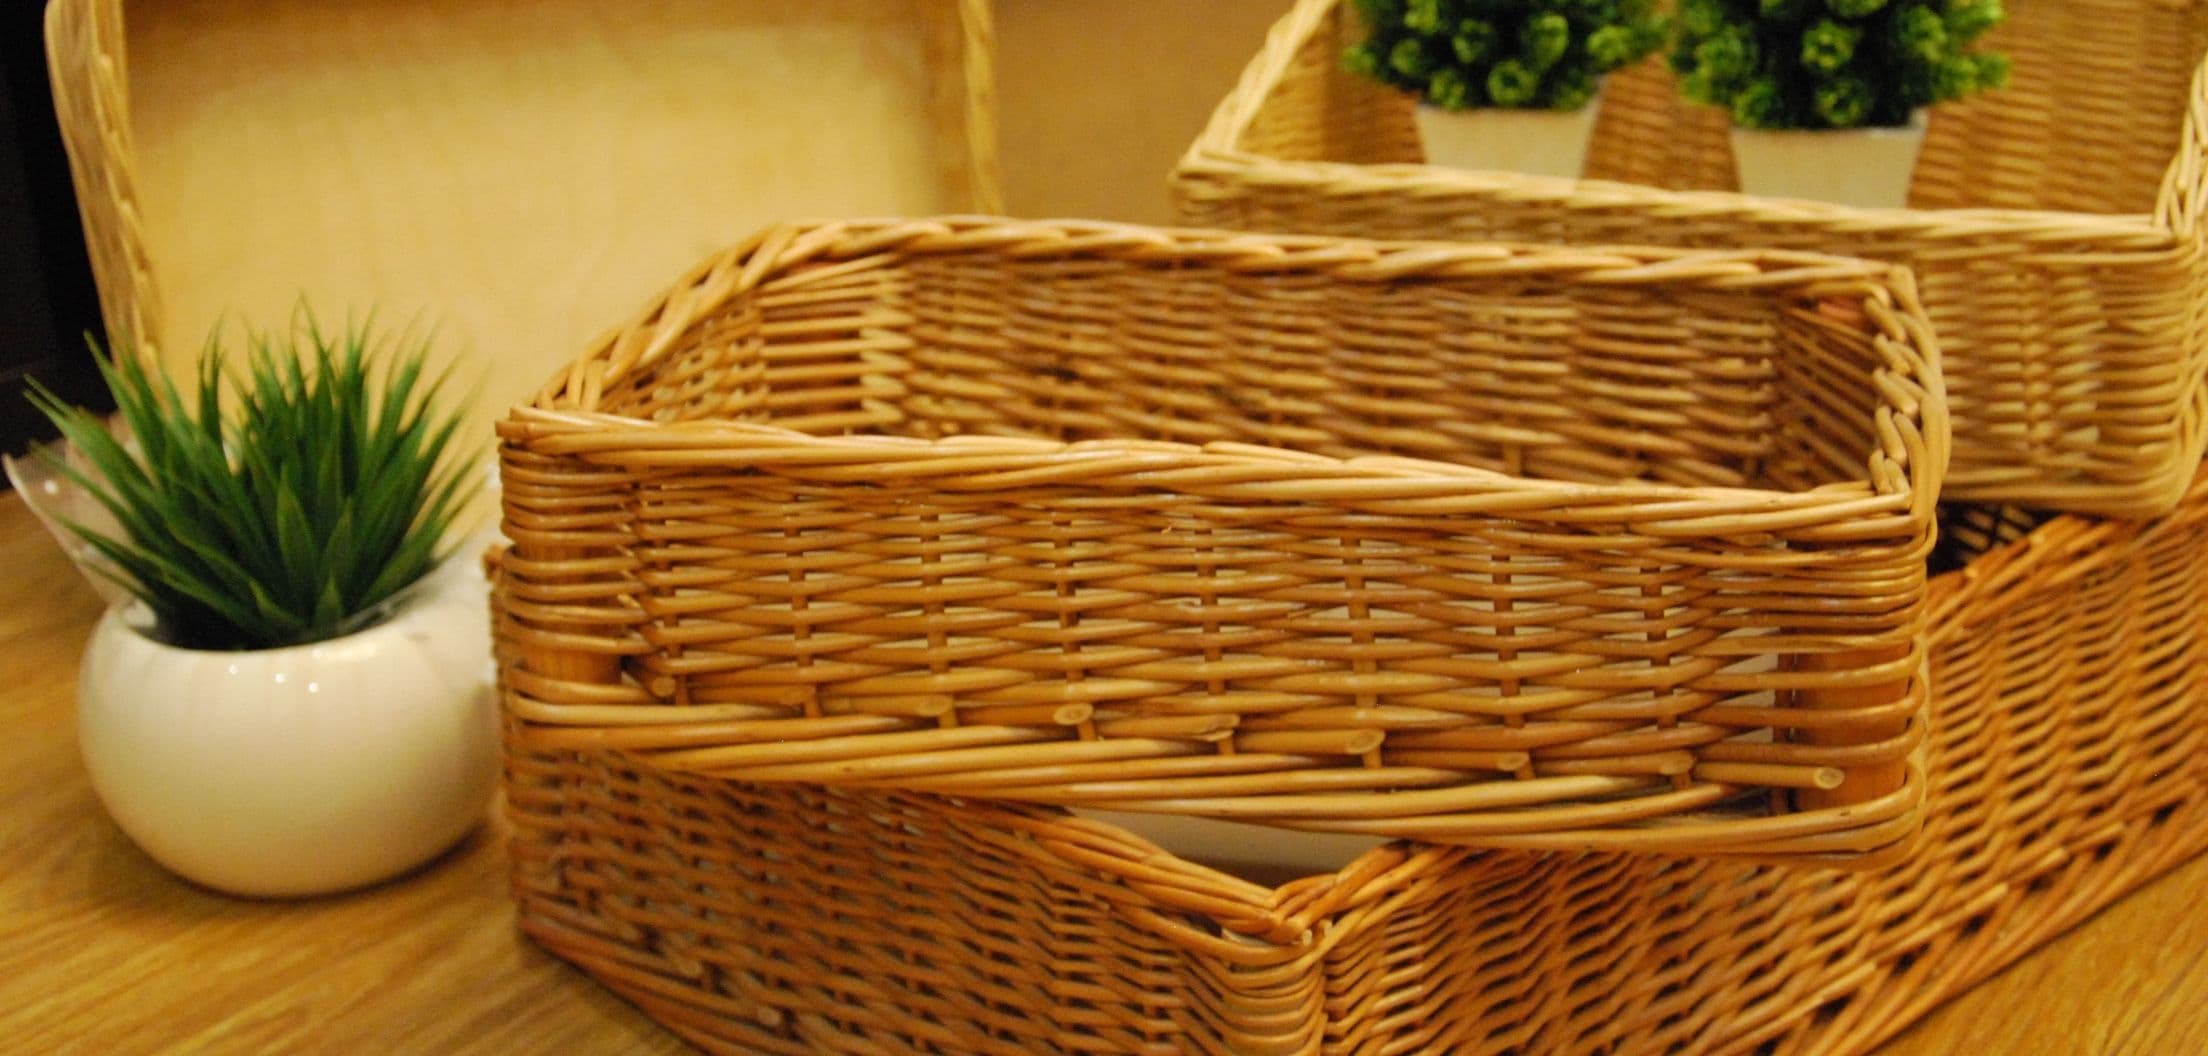 Плетенные корзины купить в интернет-магазине в Москве для подарков и пикника